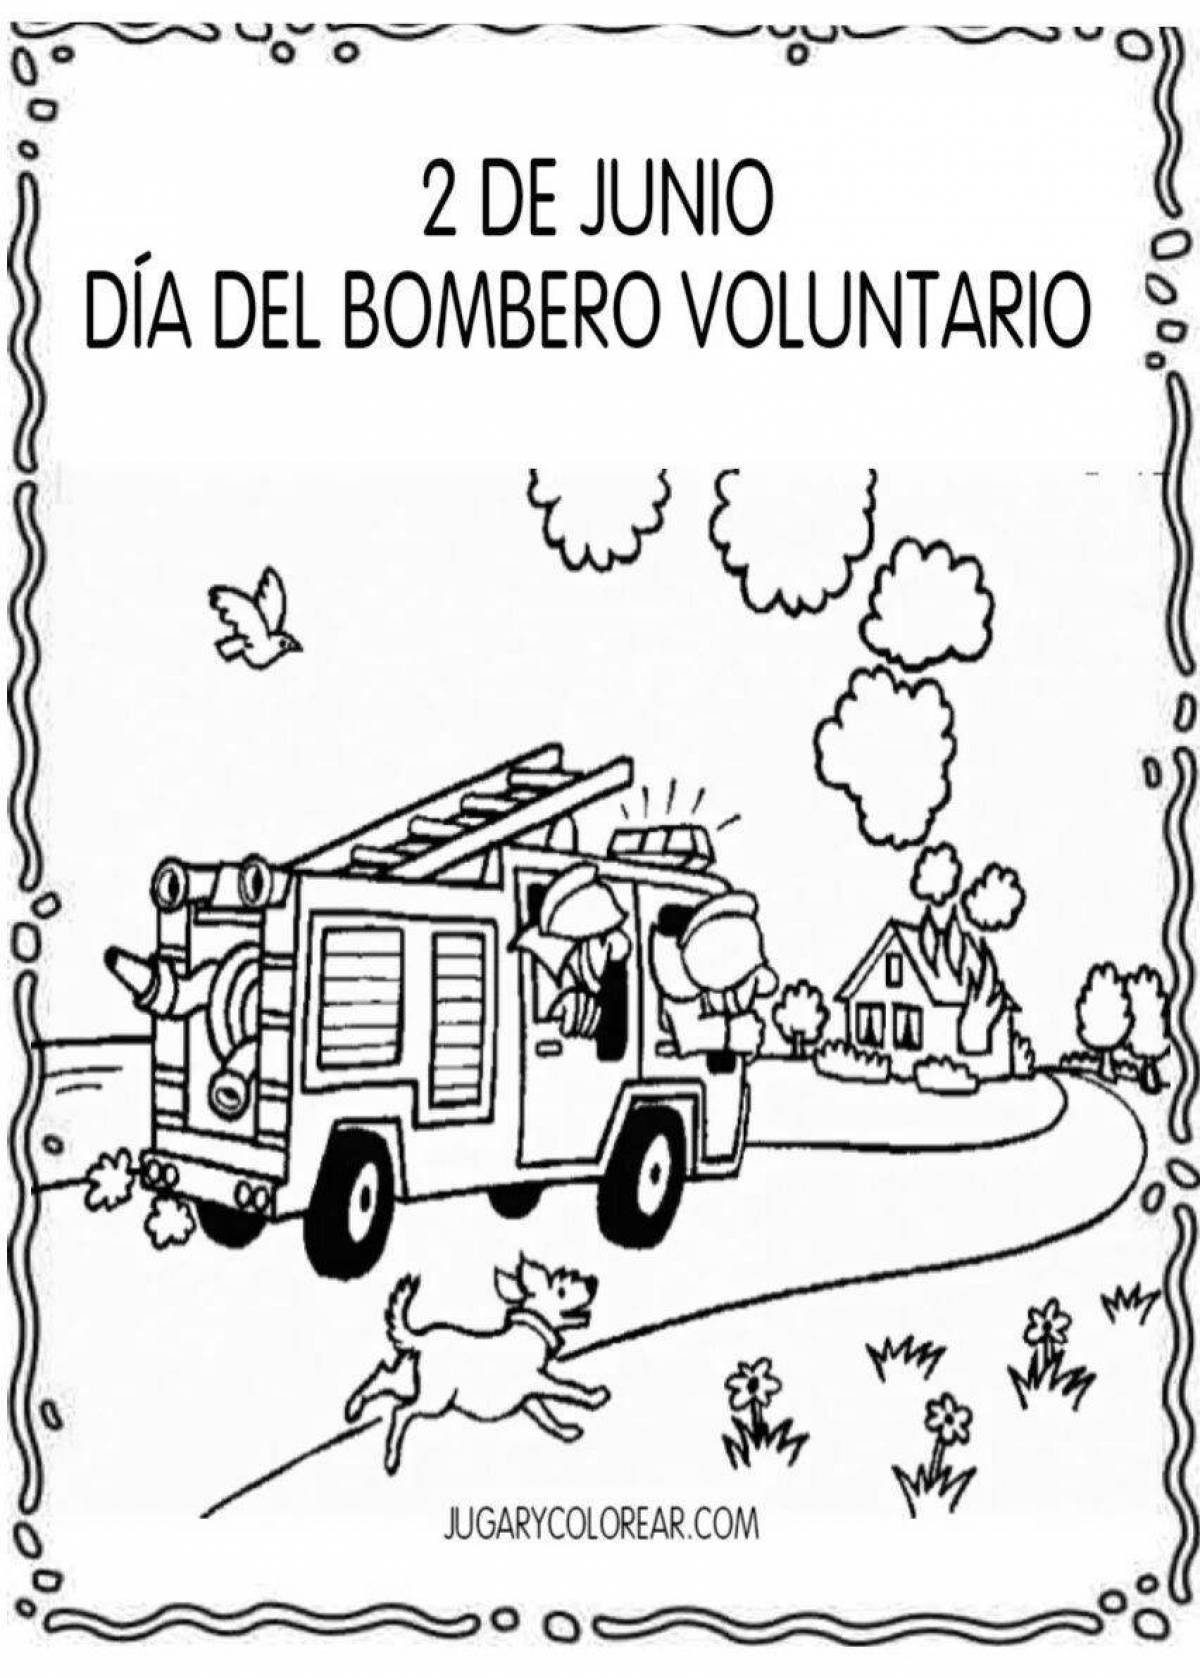 Анимационная пожарная безопасность в детском саду